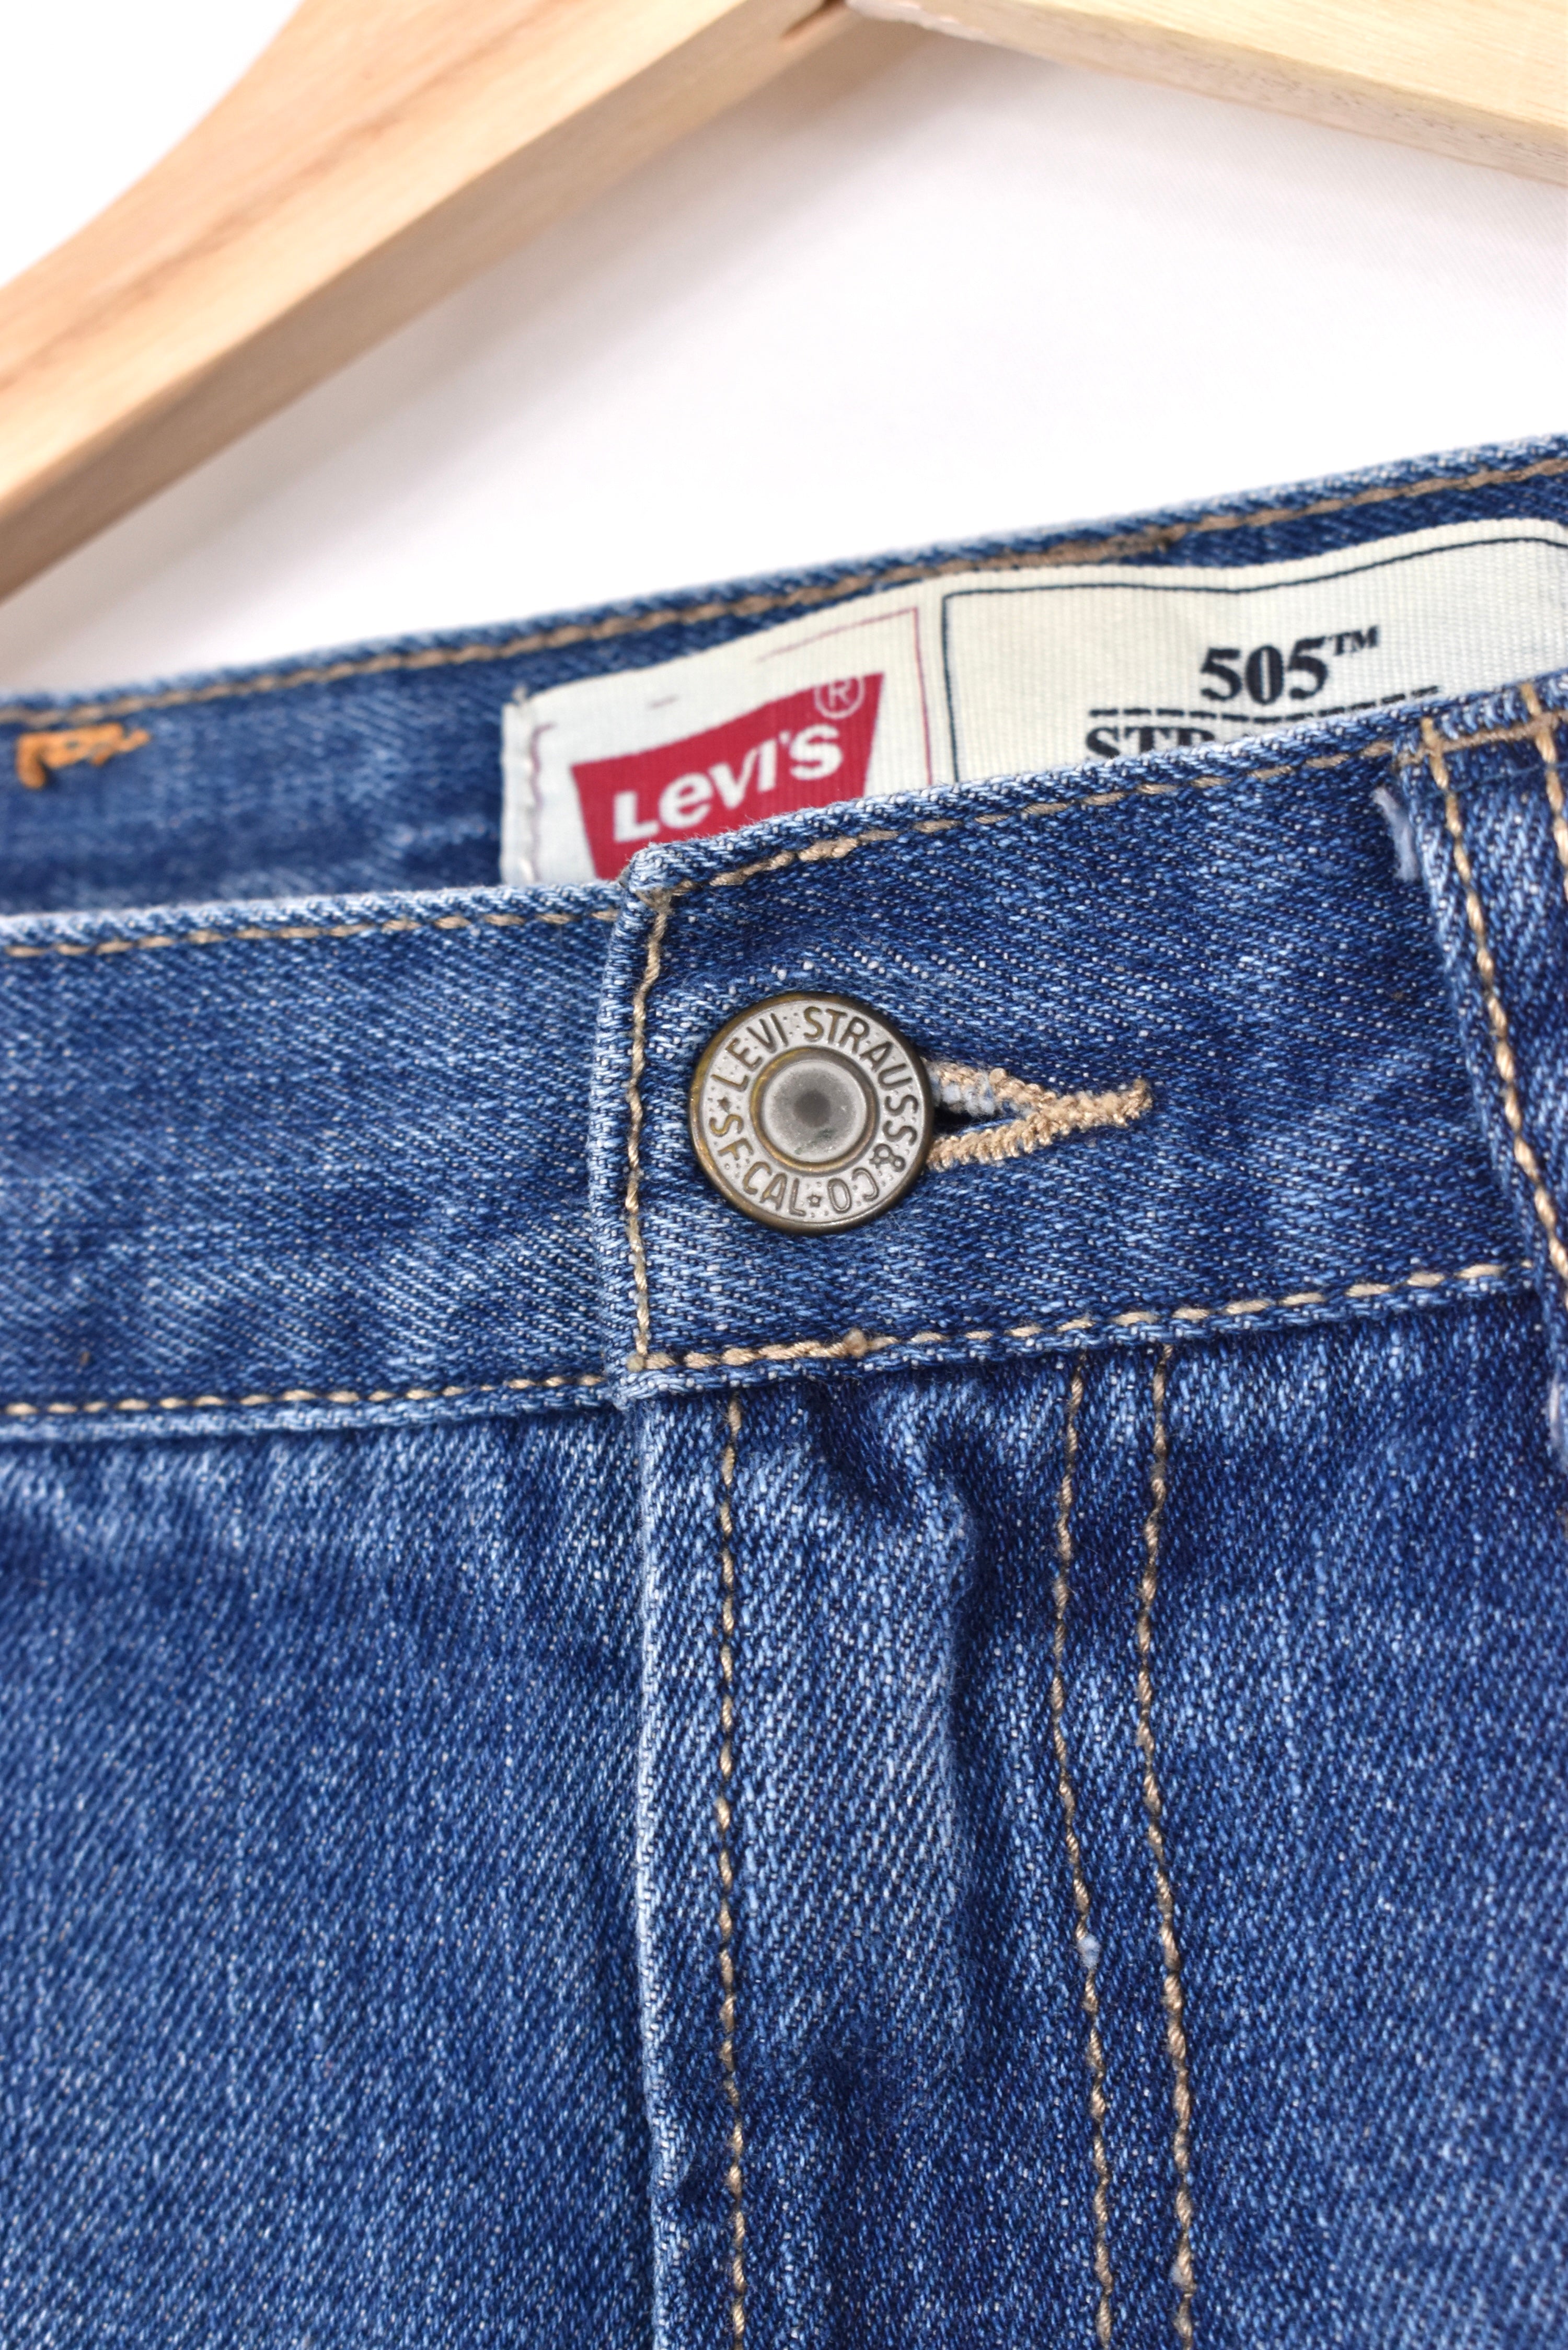 Women's vintage Levi's shorts, rework denim jeans - blue, W29" LEVIS